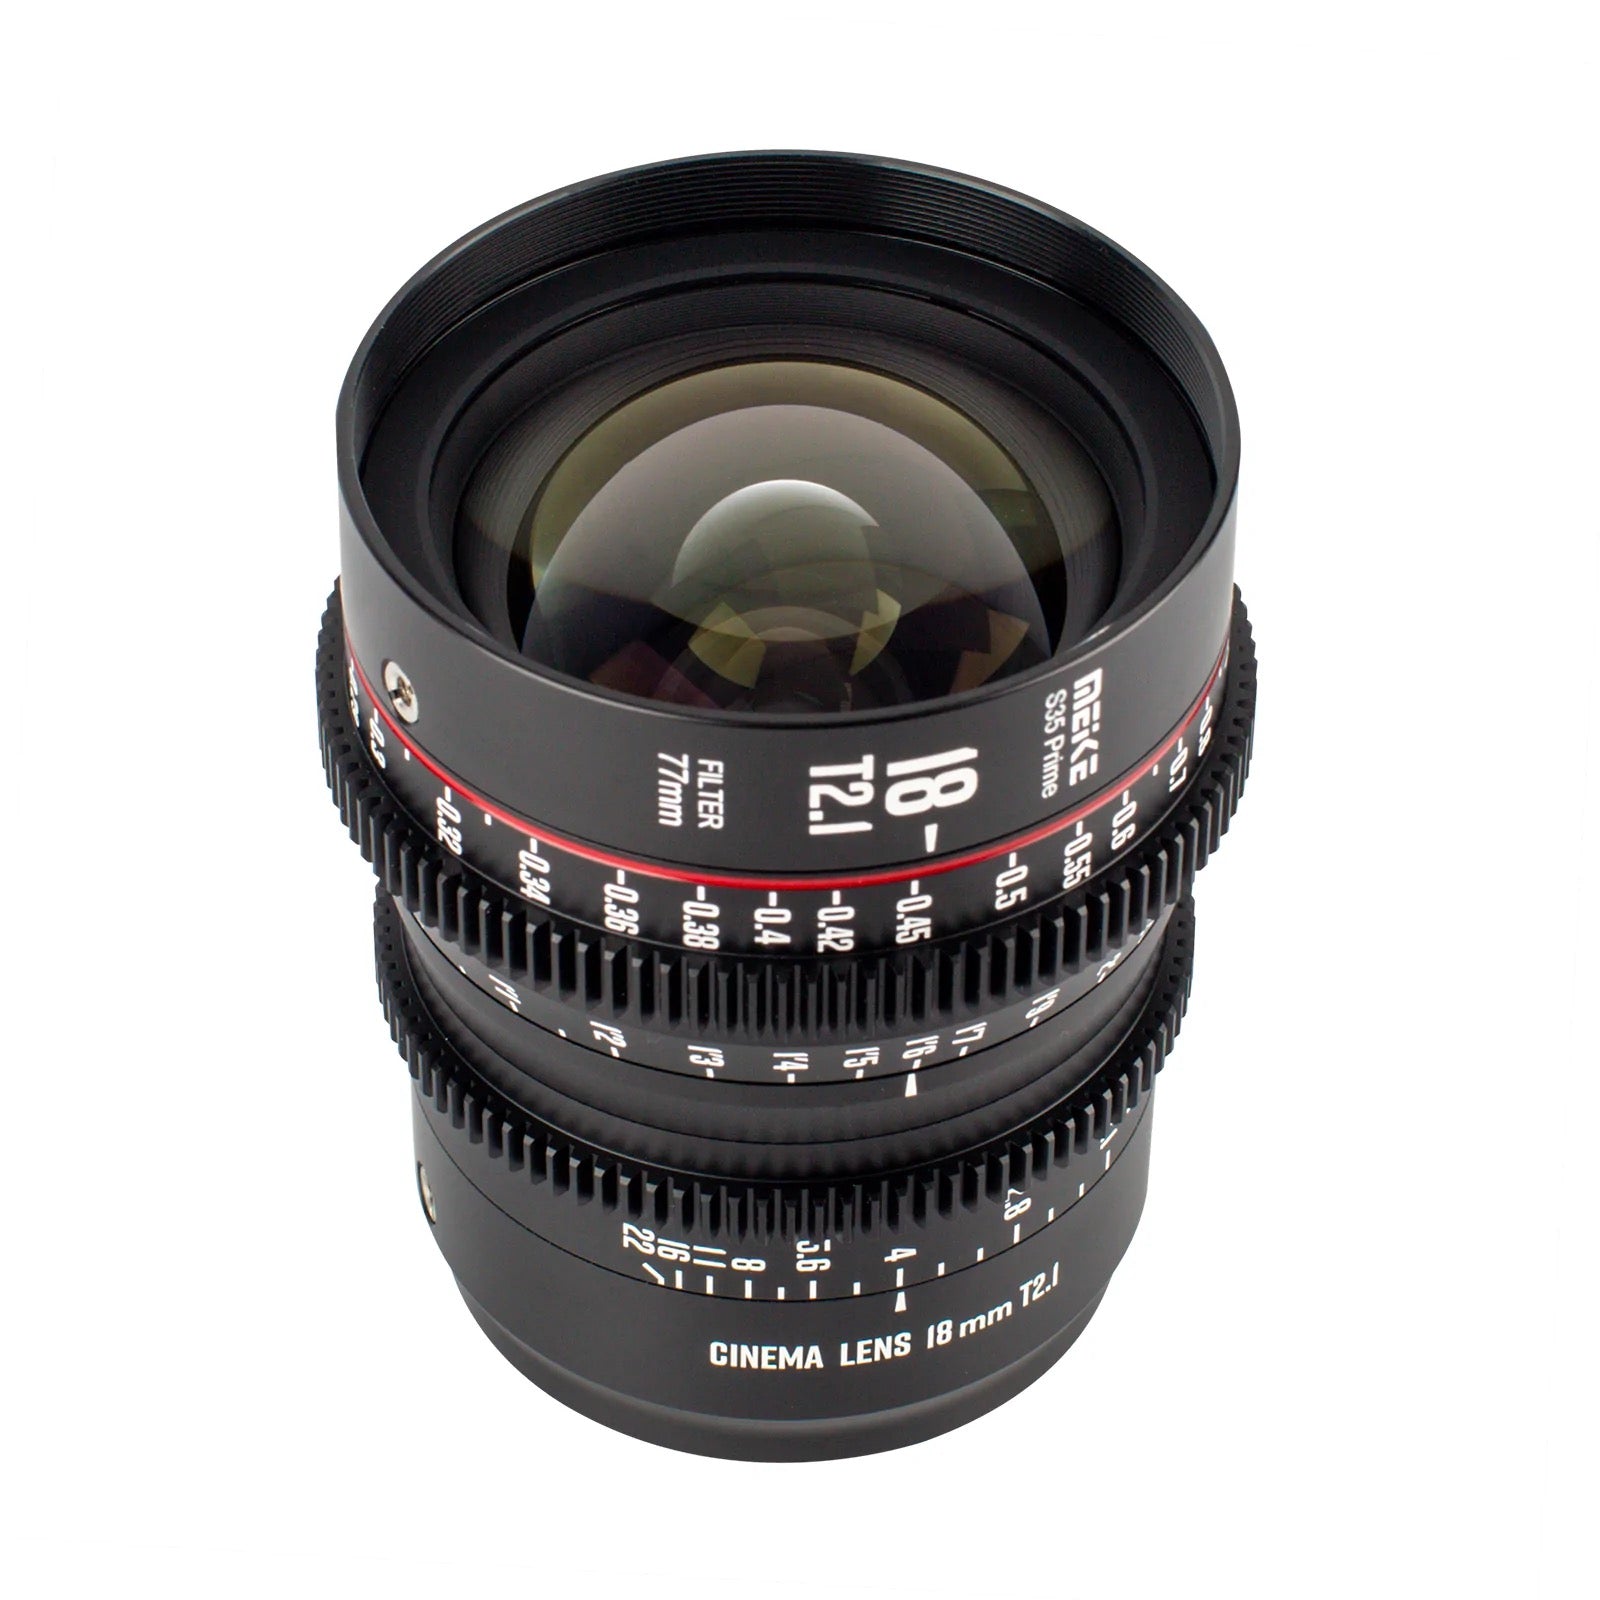 Meike Cinema Super35 18mm T2.1 Lens (EF Mount)